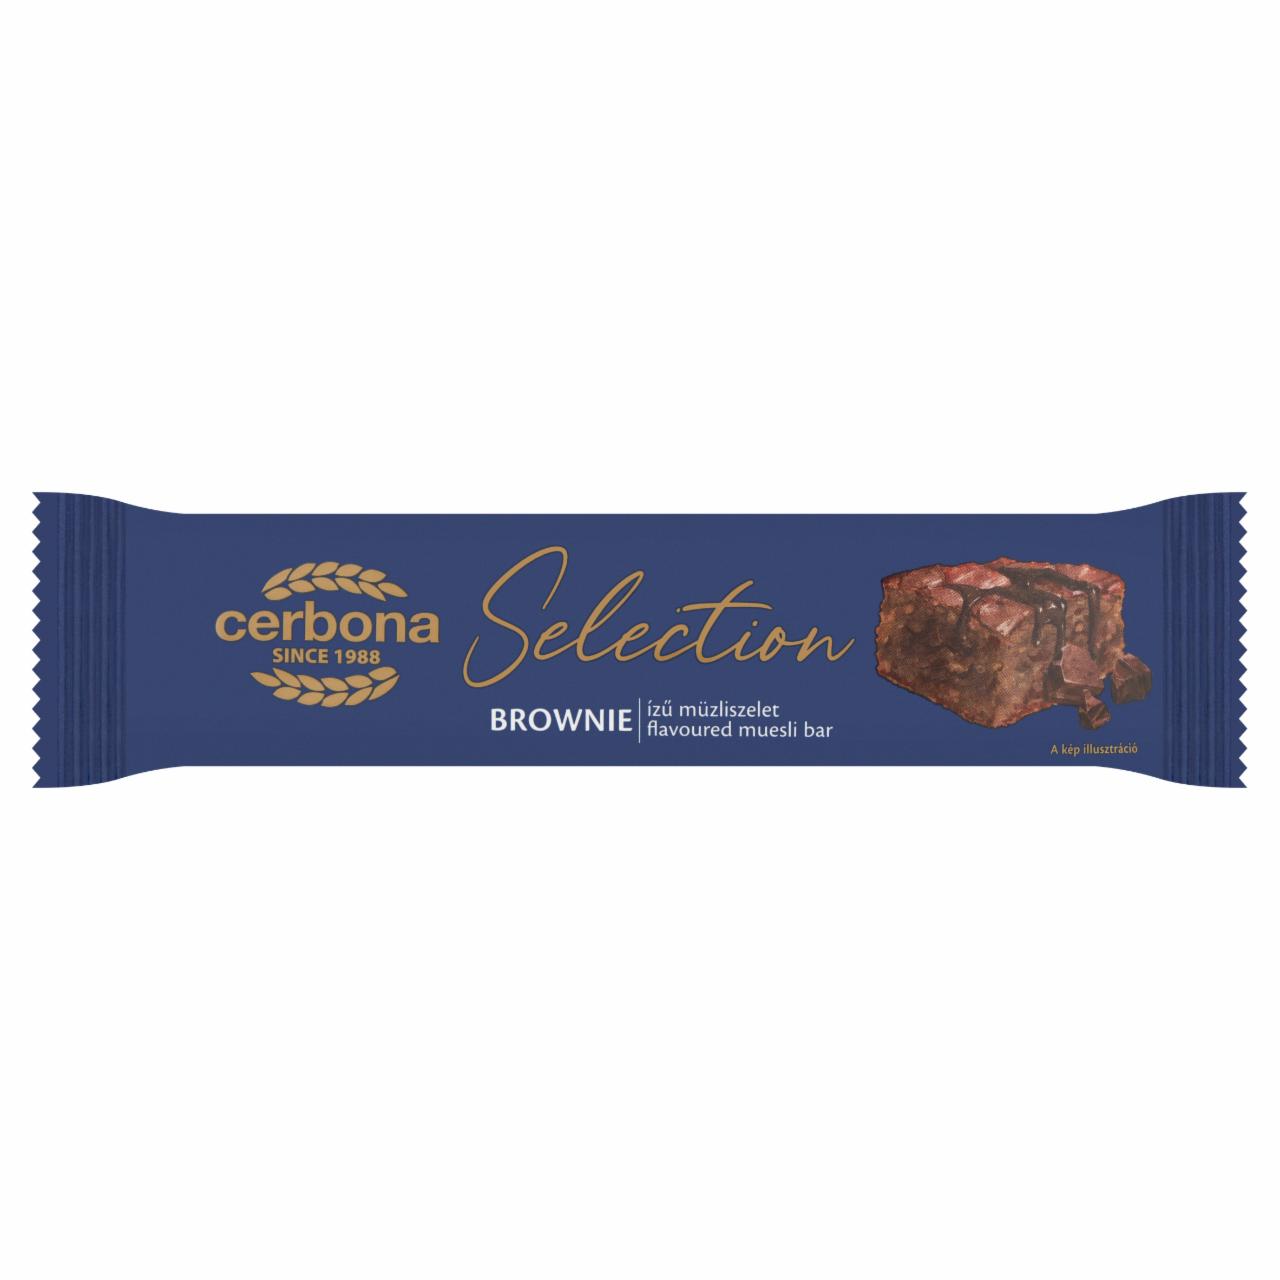 Képek - Cerbona Selection brownie ízű müzliszelet 22 g